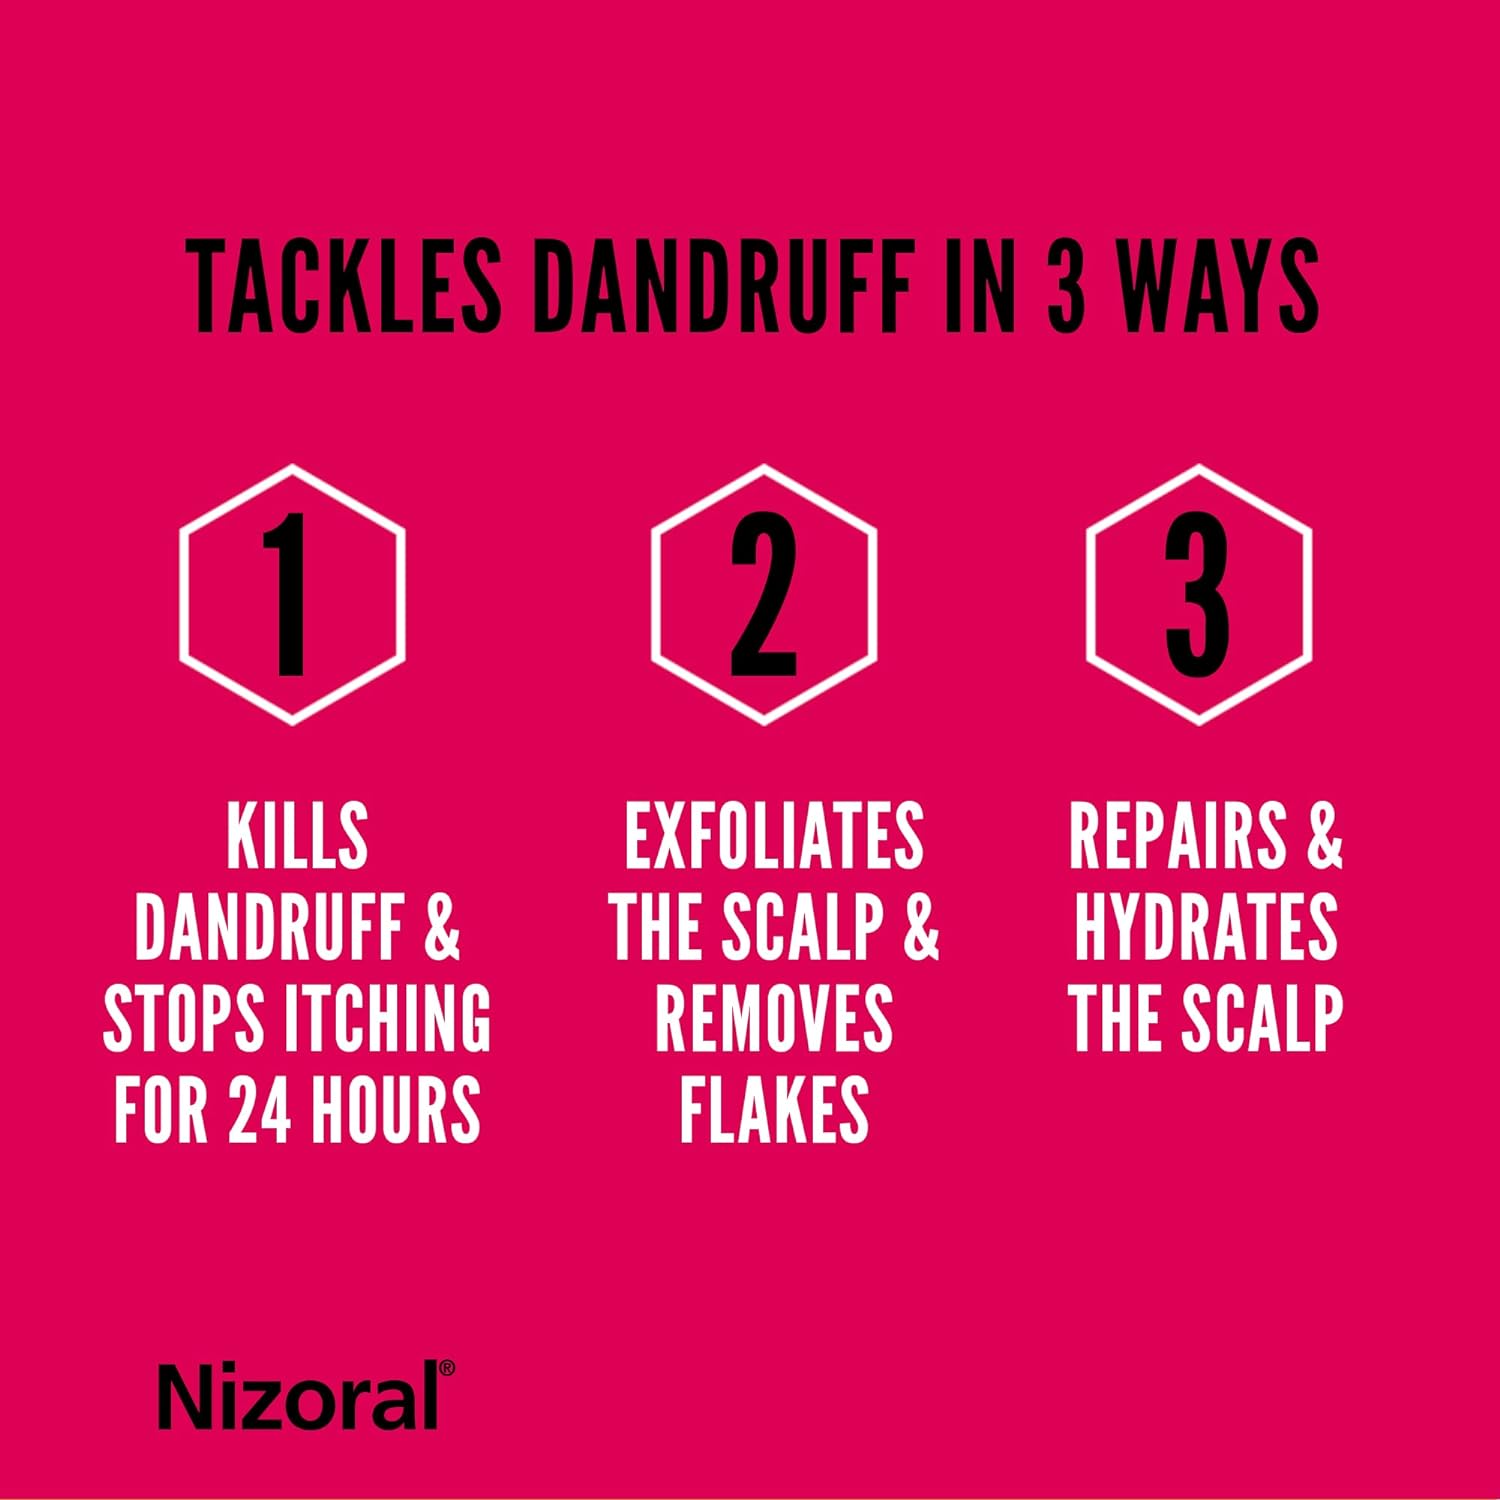 Nizoral Anti - Dandruff Daily Prevent Shampoo 200ml